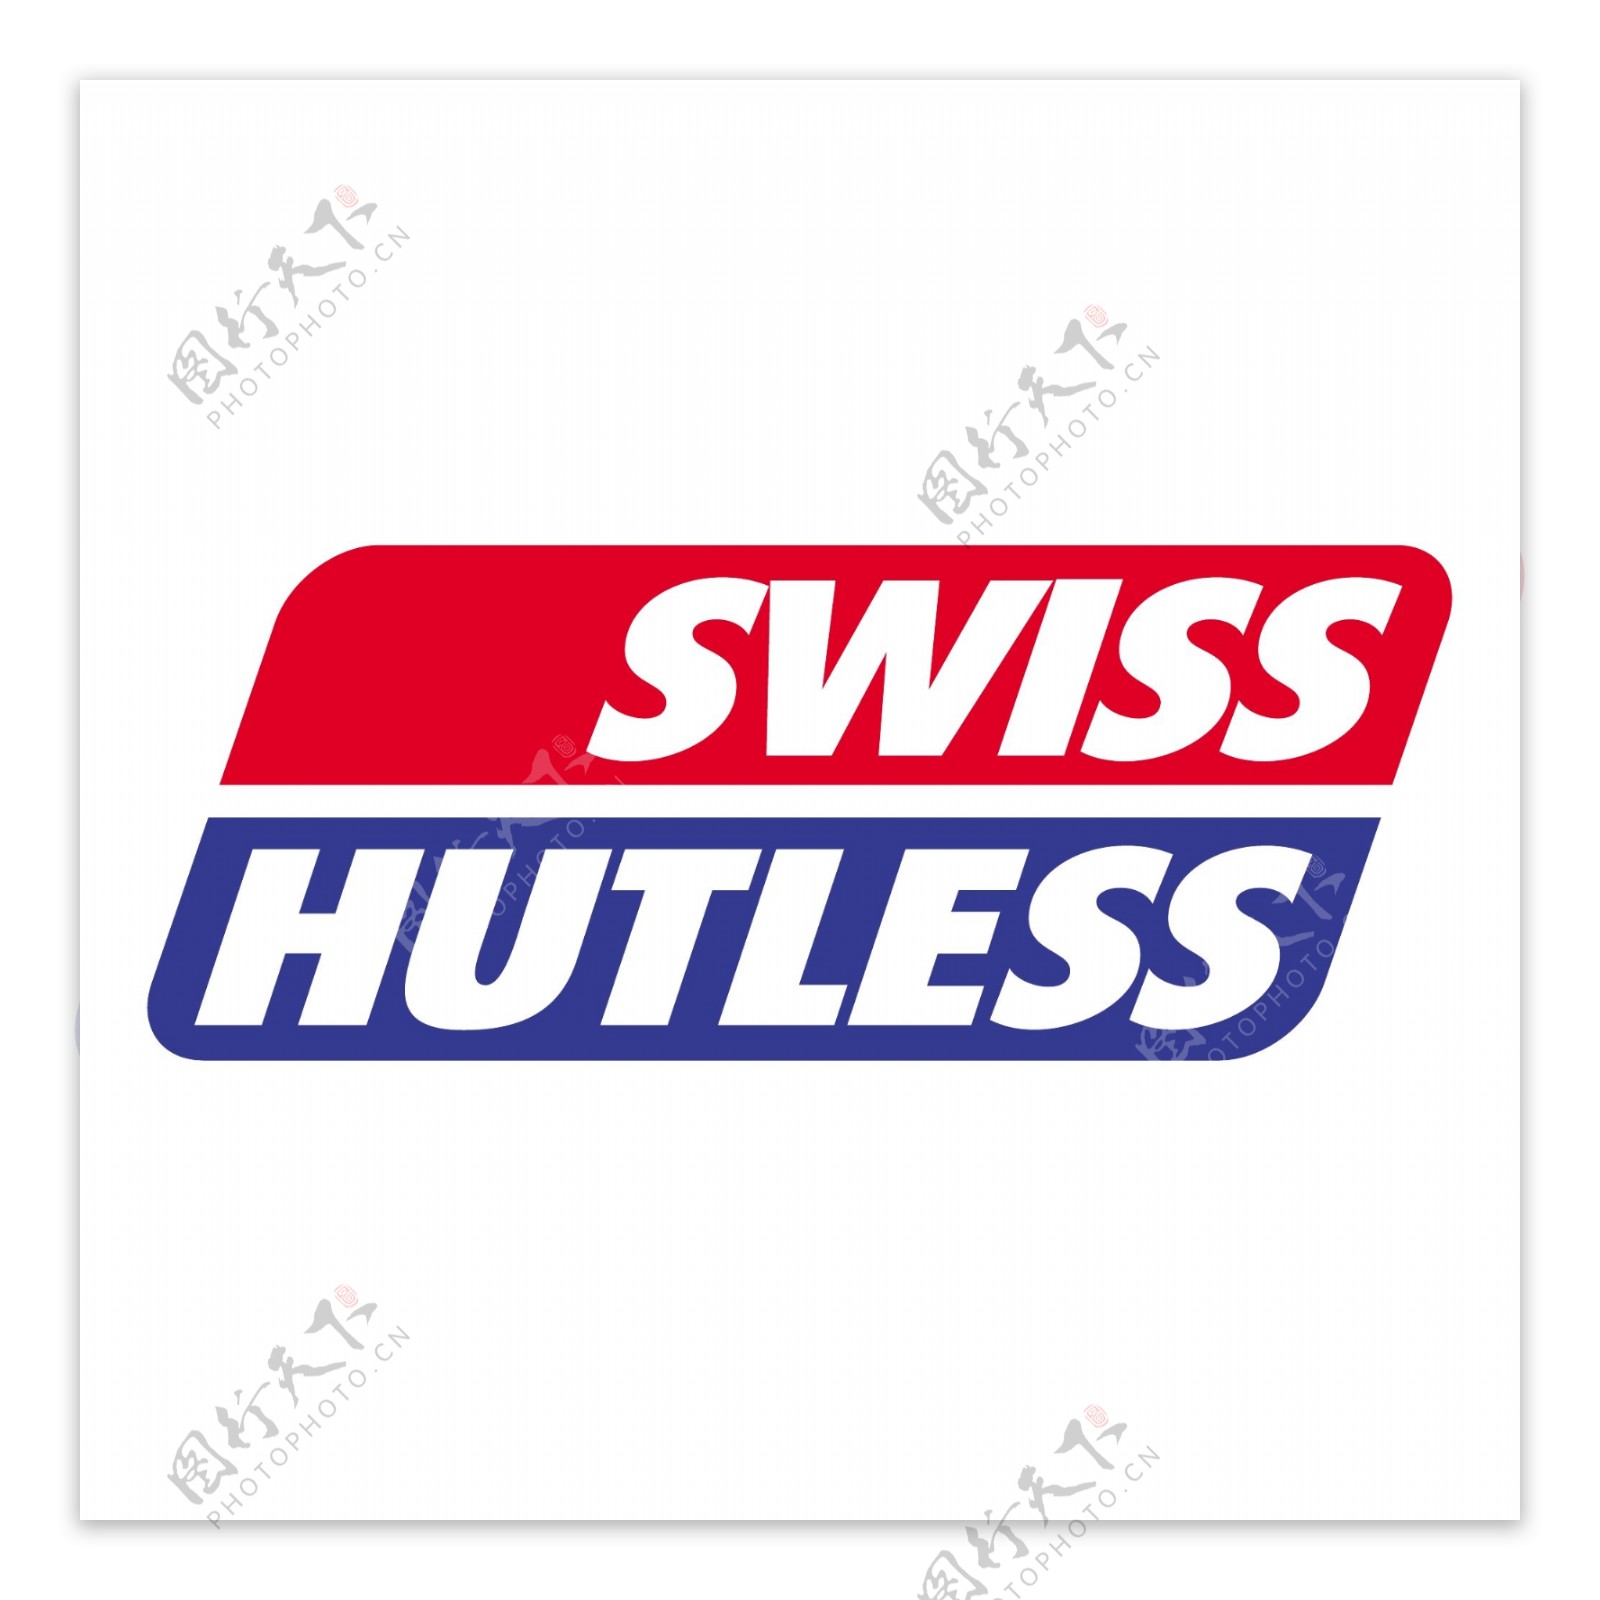 瑞士hutless